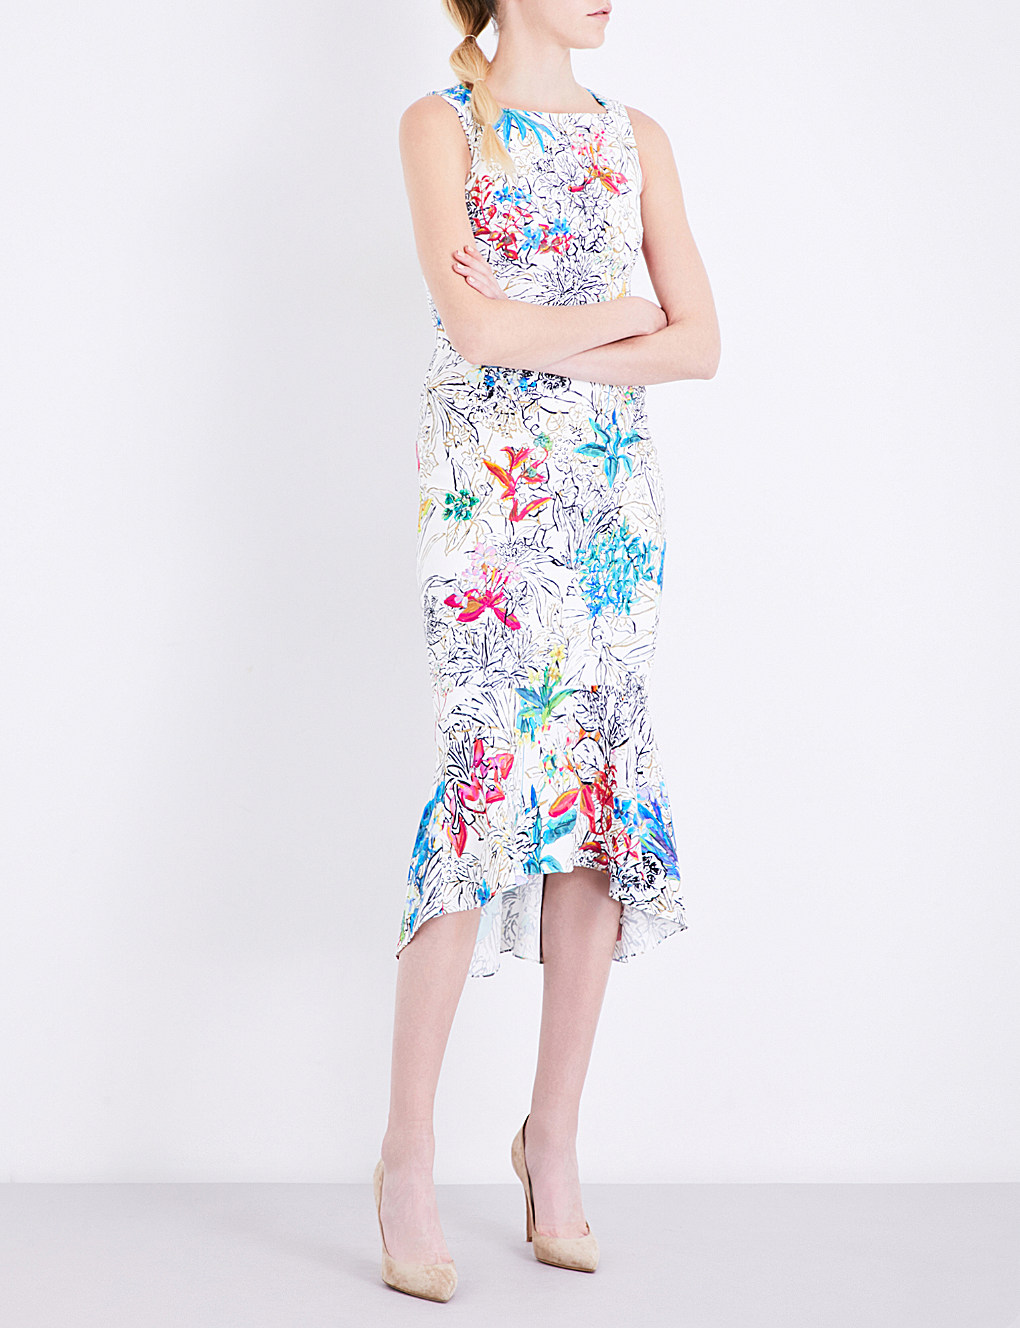 LFashionC - London Fashion Cat: Five New Amazing Floral Dresses